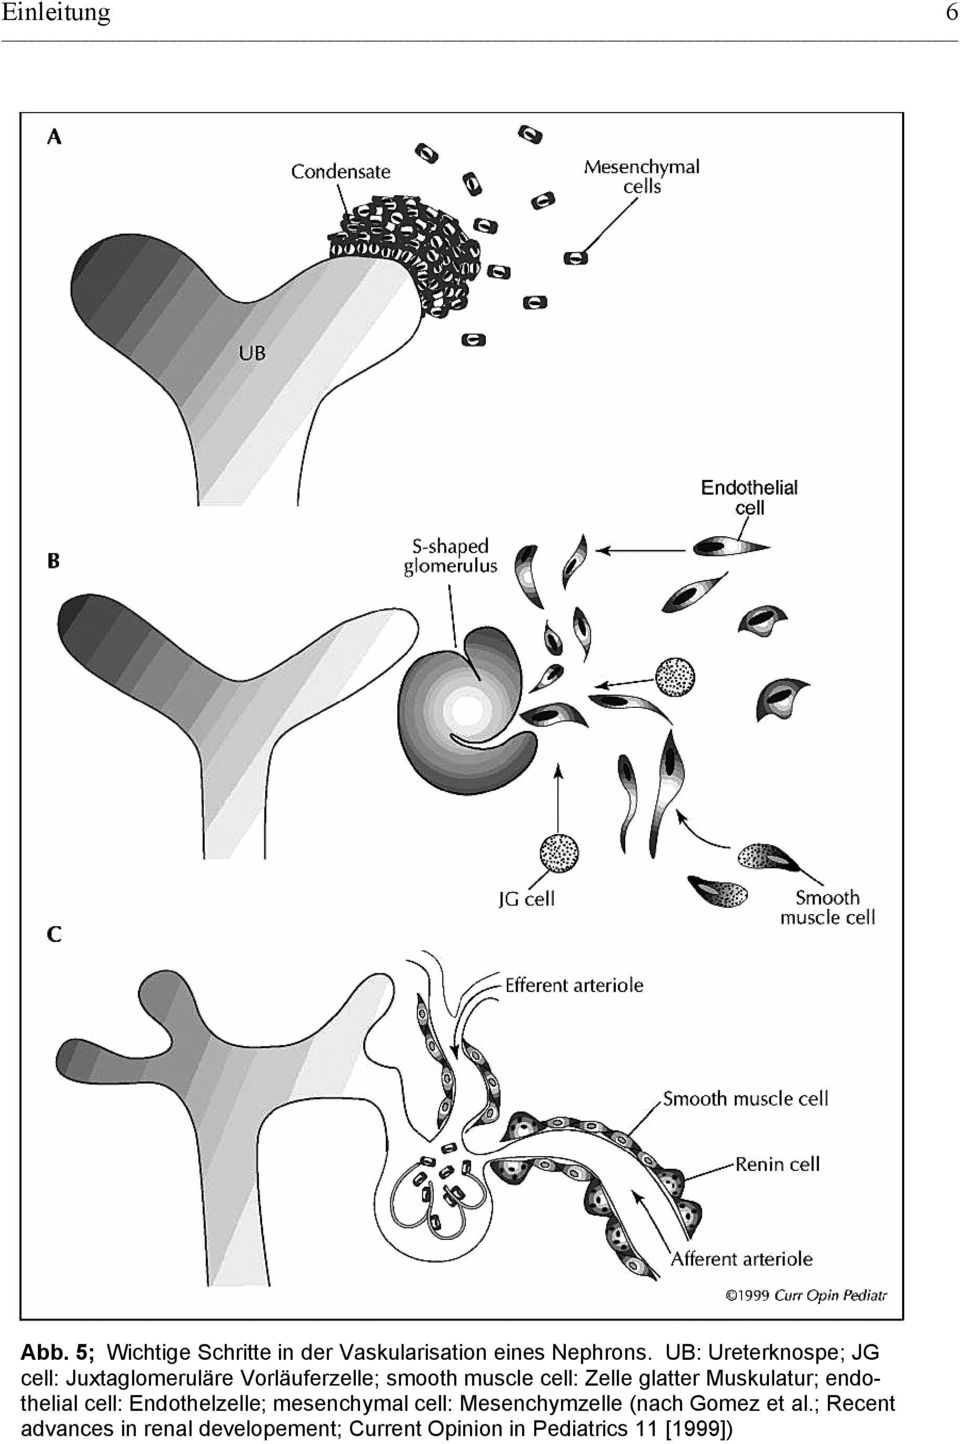 glatter Muskulatur; endothelial cell: Endothelzelle; mesenchymal cell: Mesenchymzelle